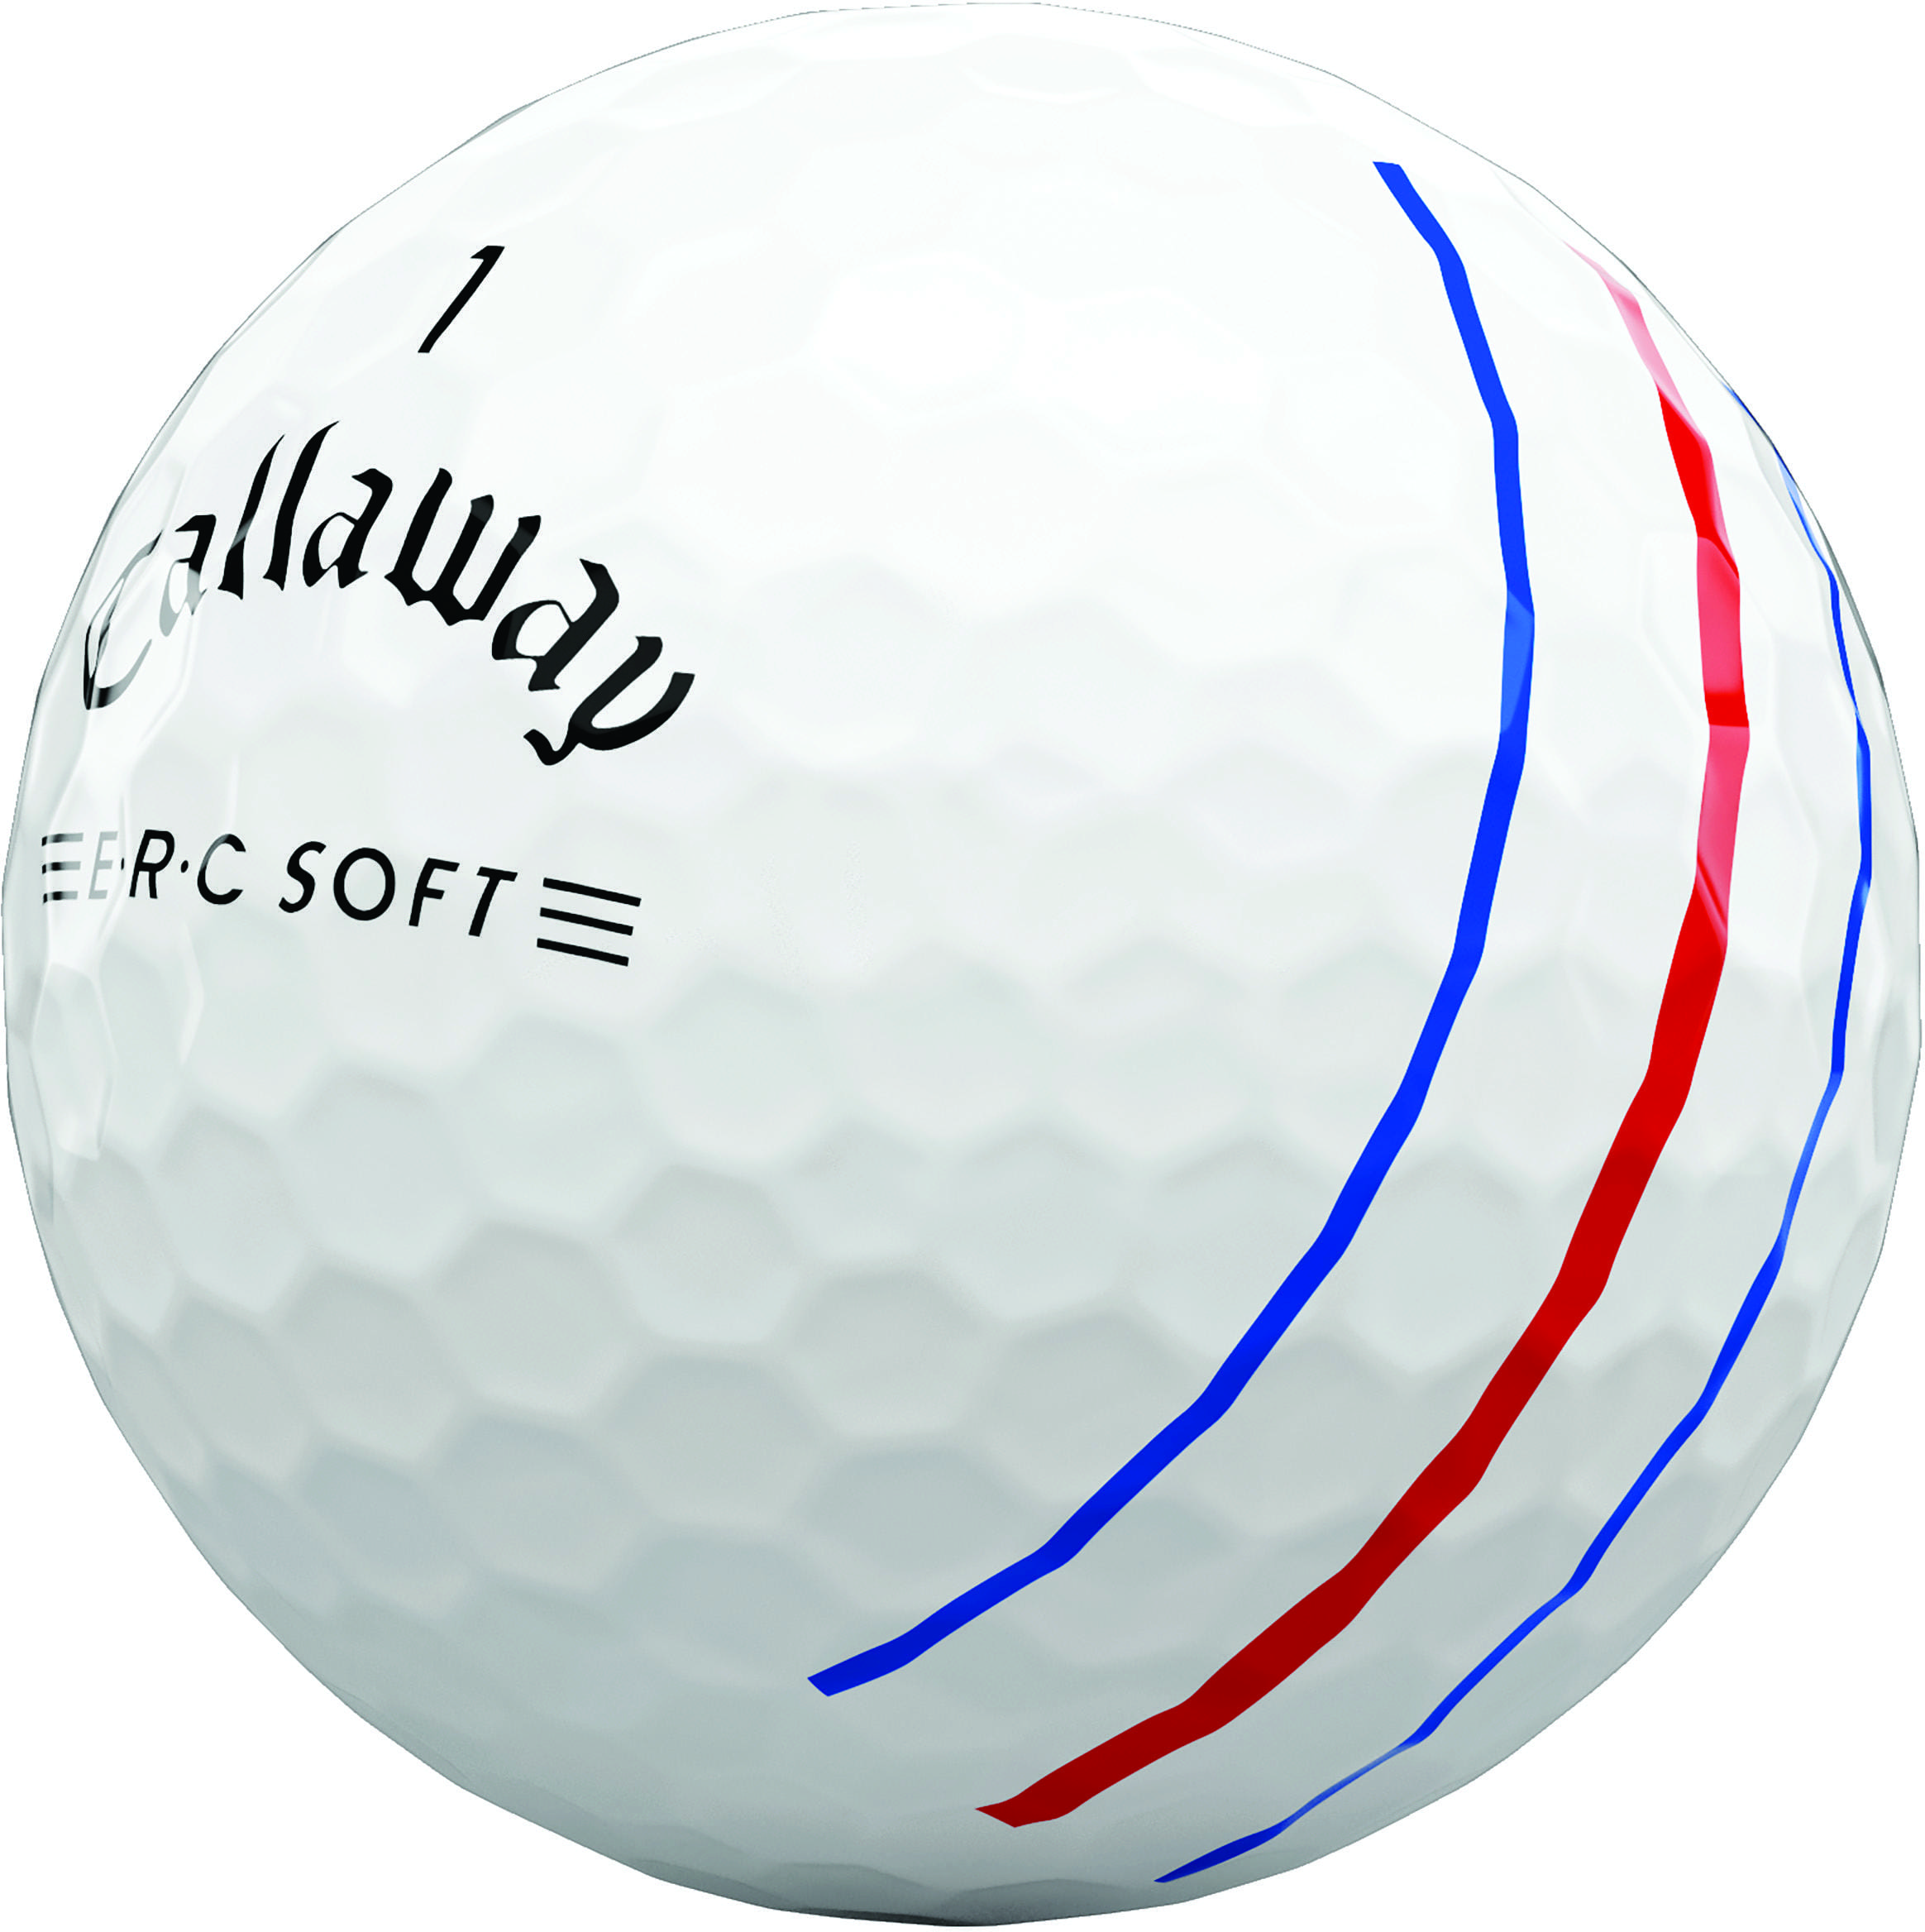 Callaway E.R.C Soft Golfbälle, white